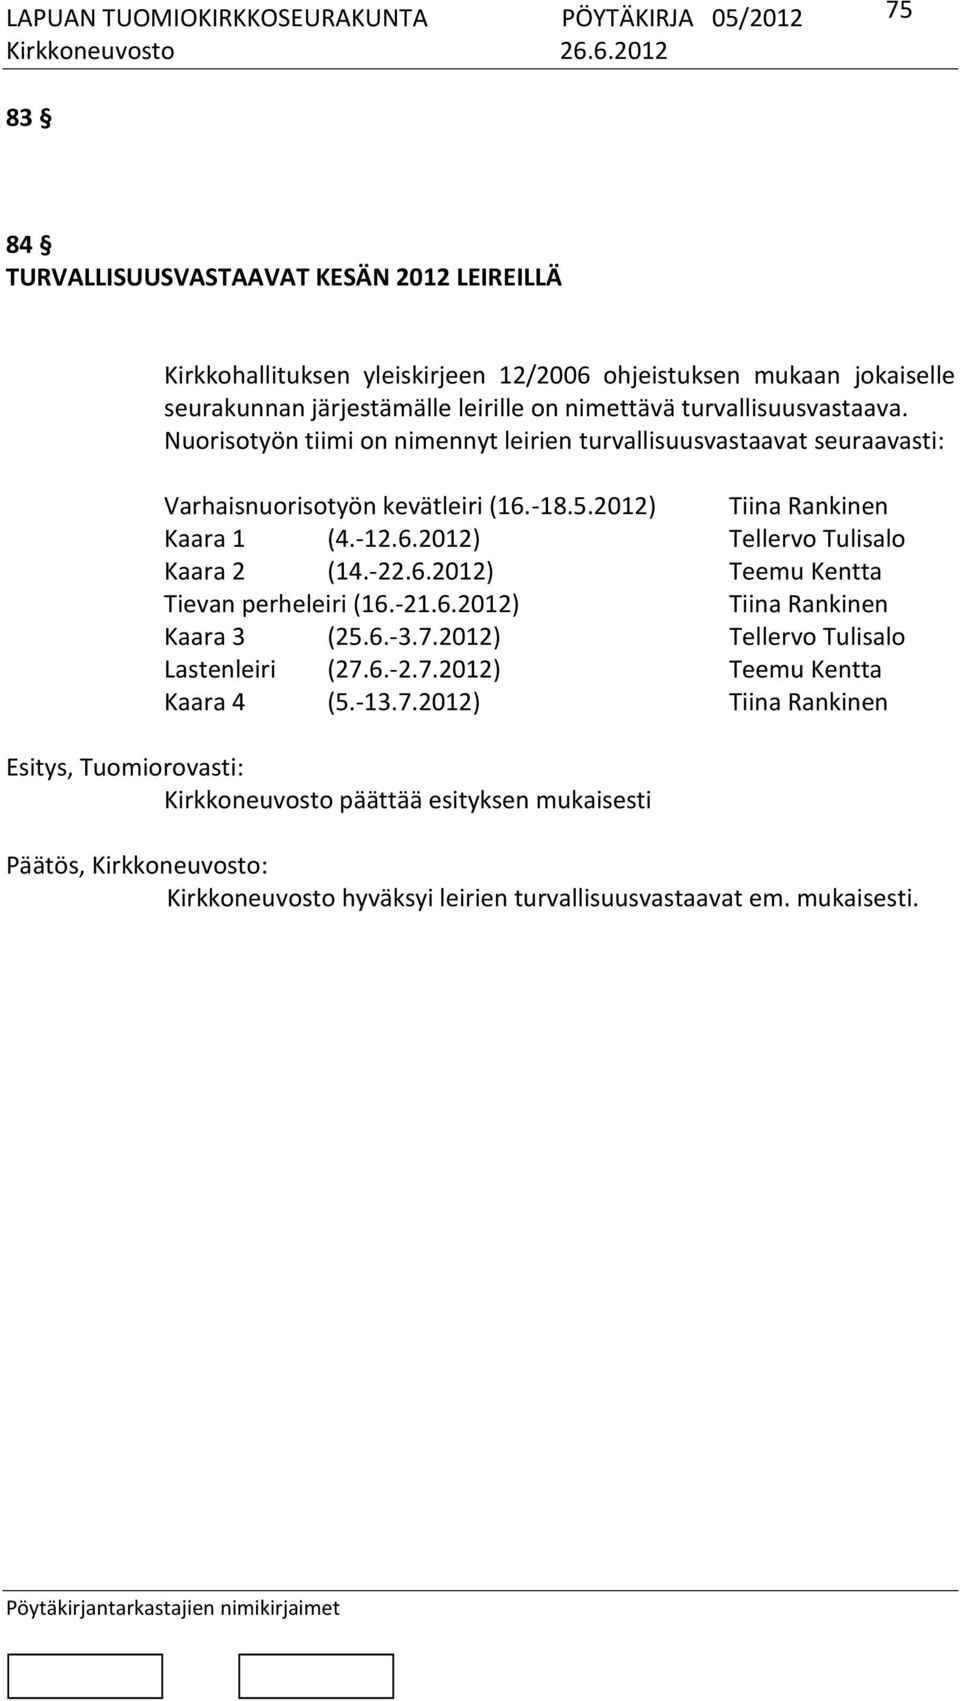 -22.6.2012) Teemu Kentta Tievan perheleiri (16.-21.6.2012) Tiina Rankinen Kaara 3 (25.6.-3.7.